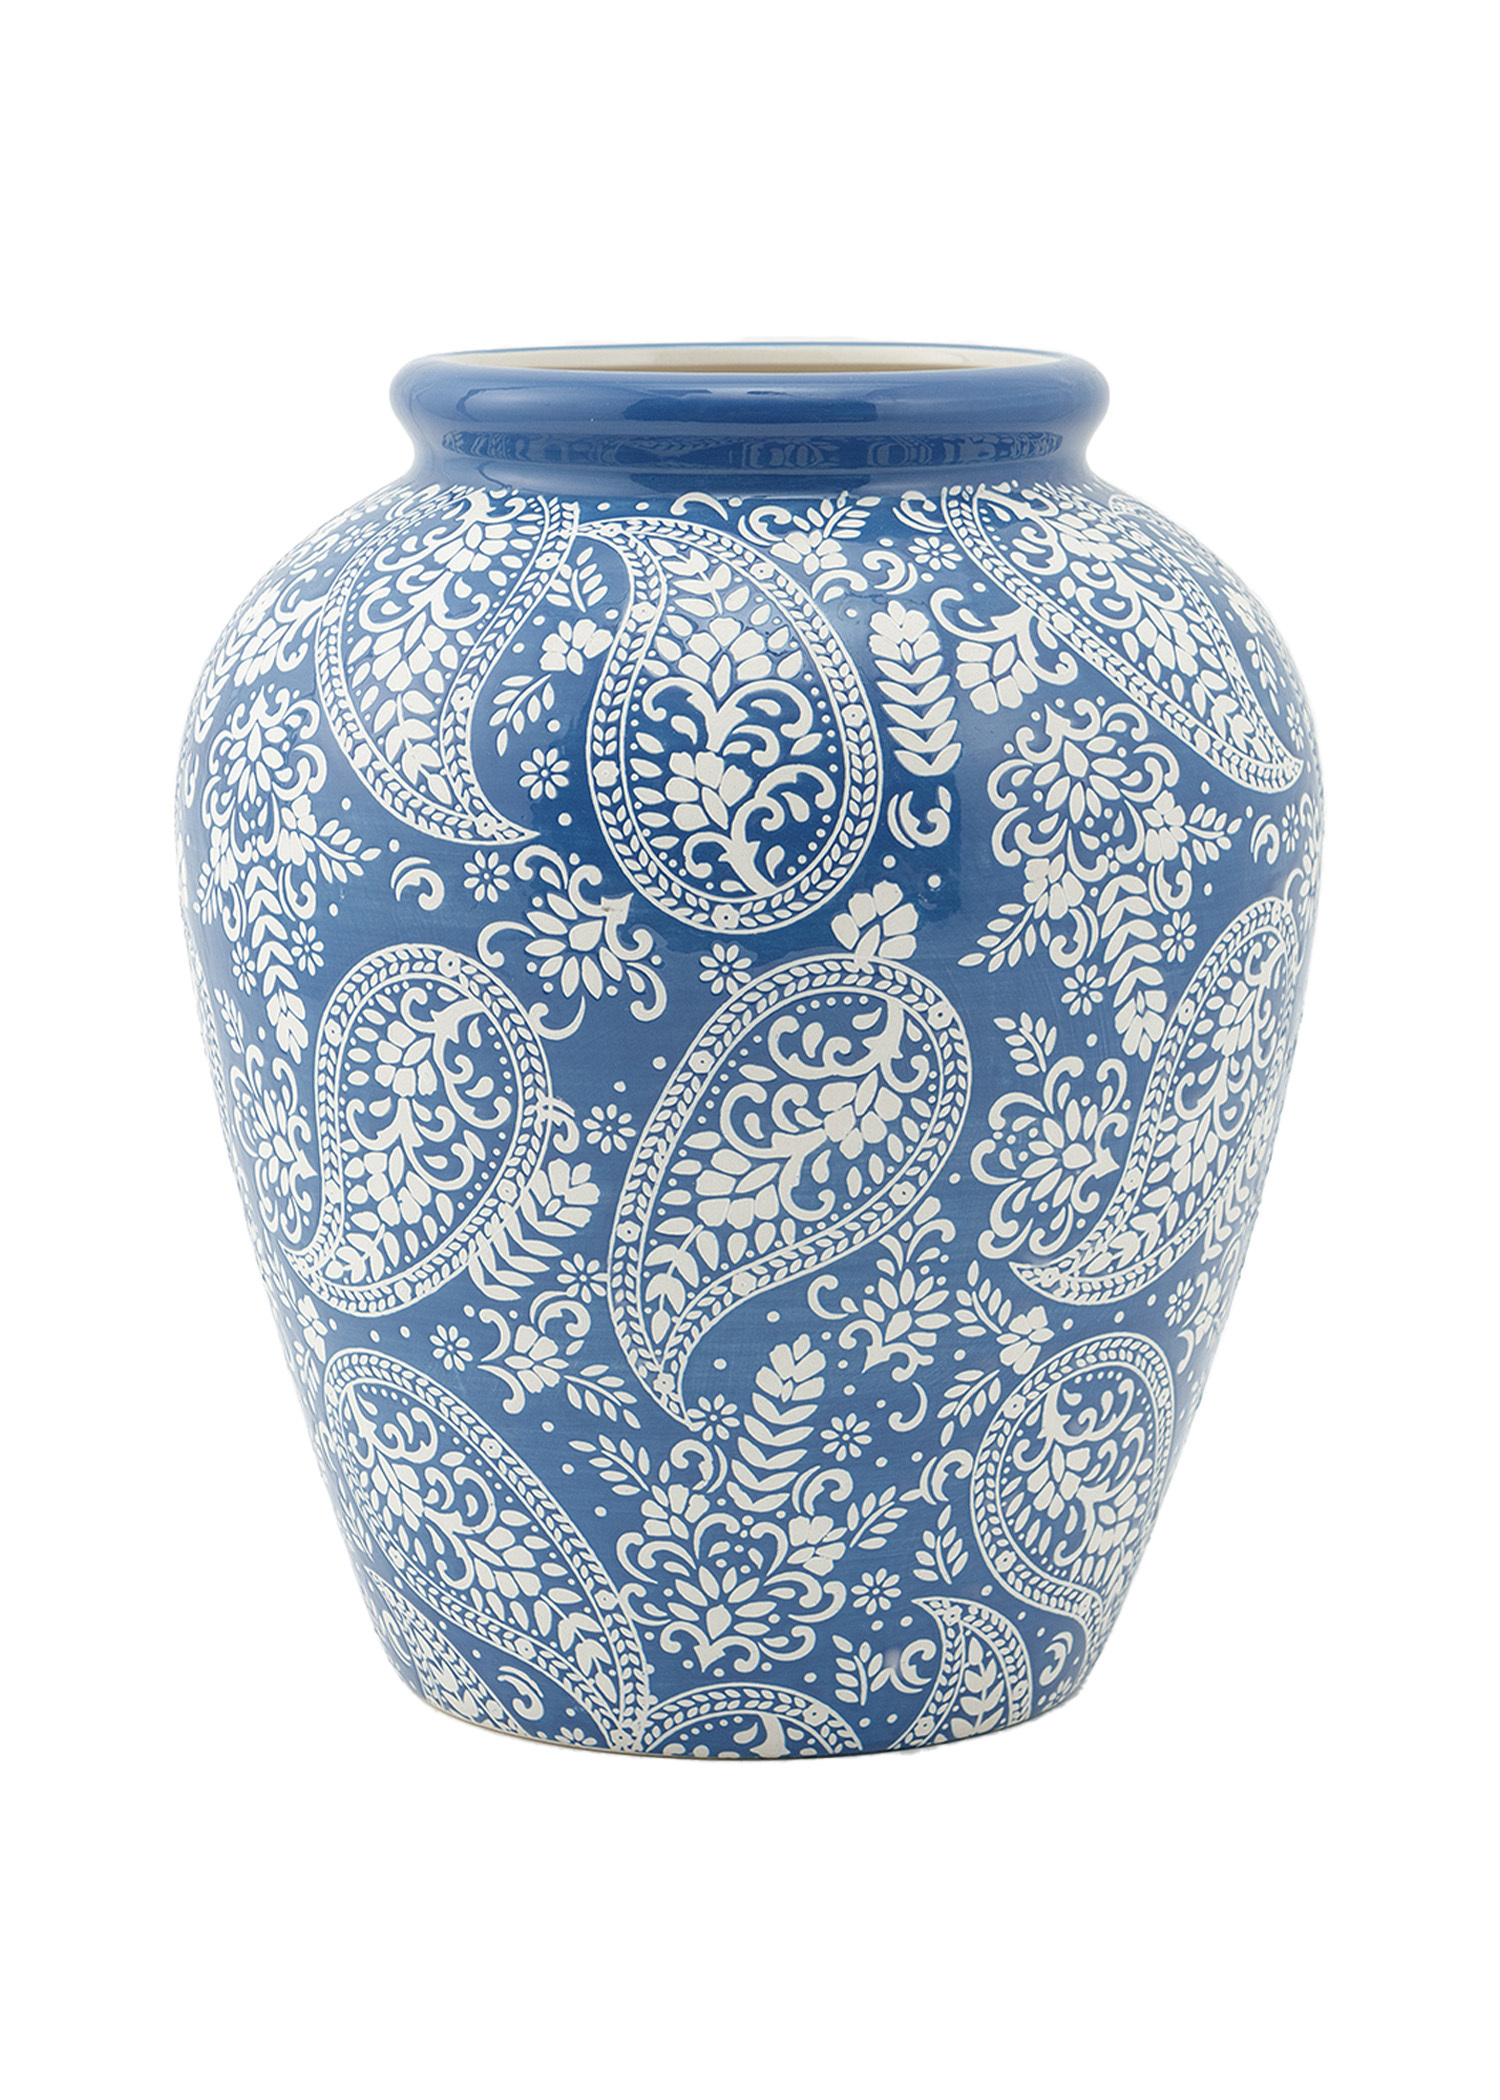 Large paisley patterned vase